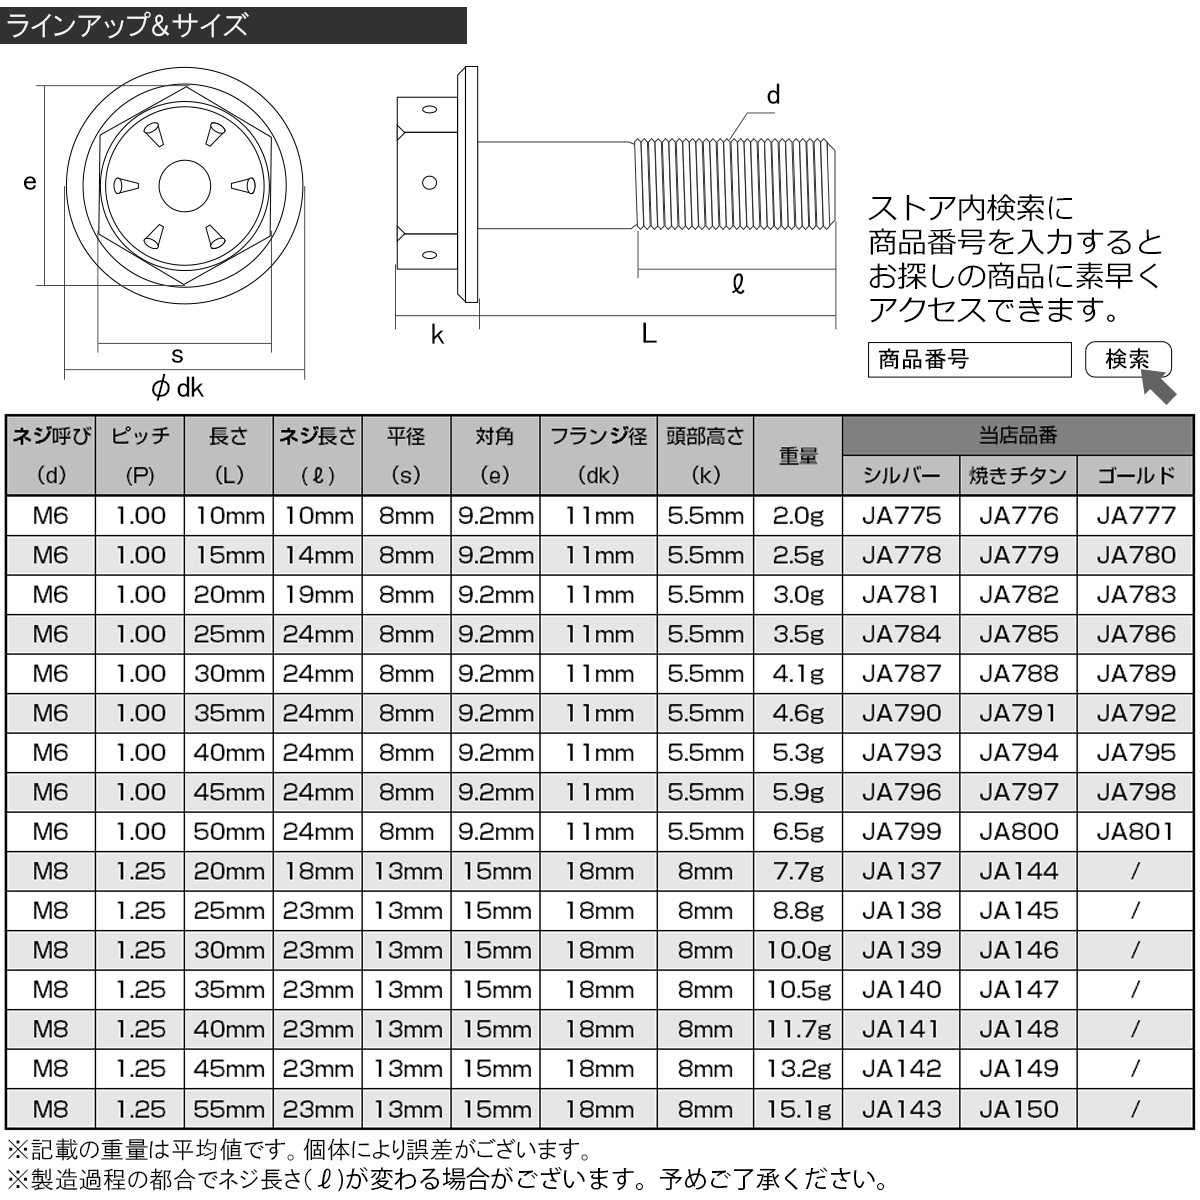 64チタンボルト M8×20mm P1.25 ホールヘッド 六角ボルト フランジ付き六角ボルト レインボー(焼チタン風) Ti6Al-4V JA144の画像3